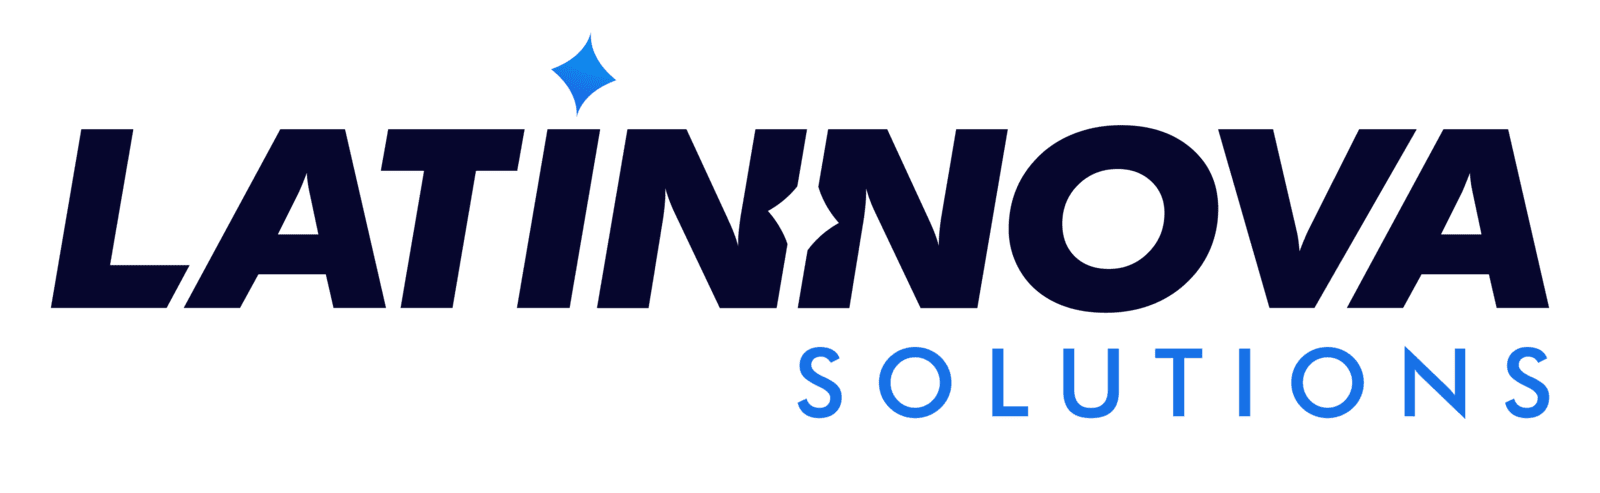 Latinnova Solutions | Digital Marketing Agency